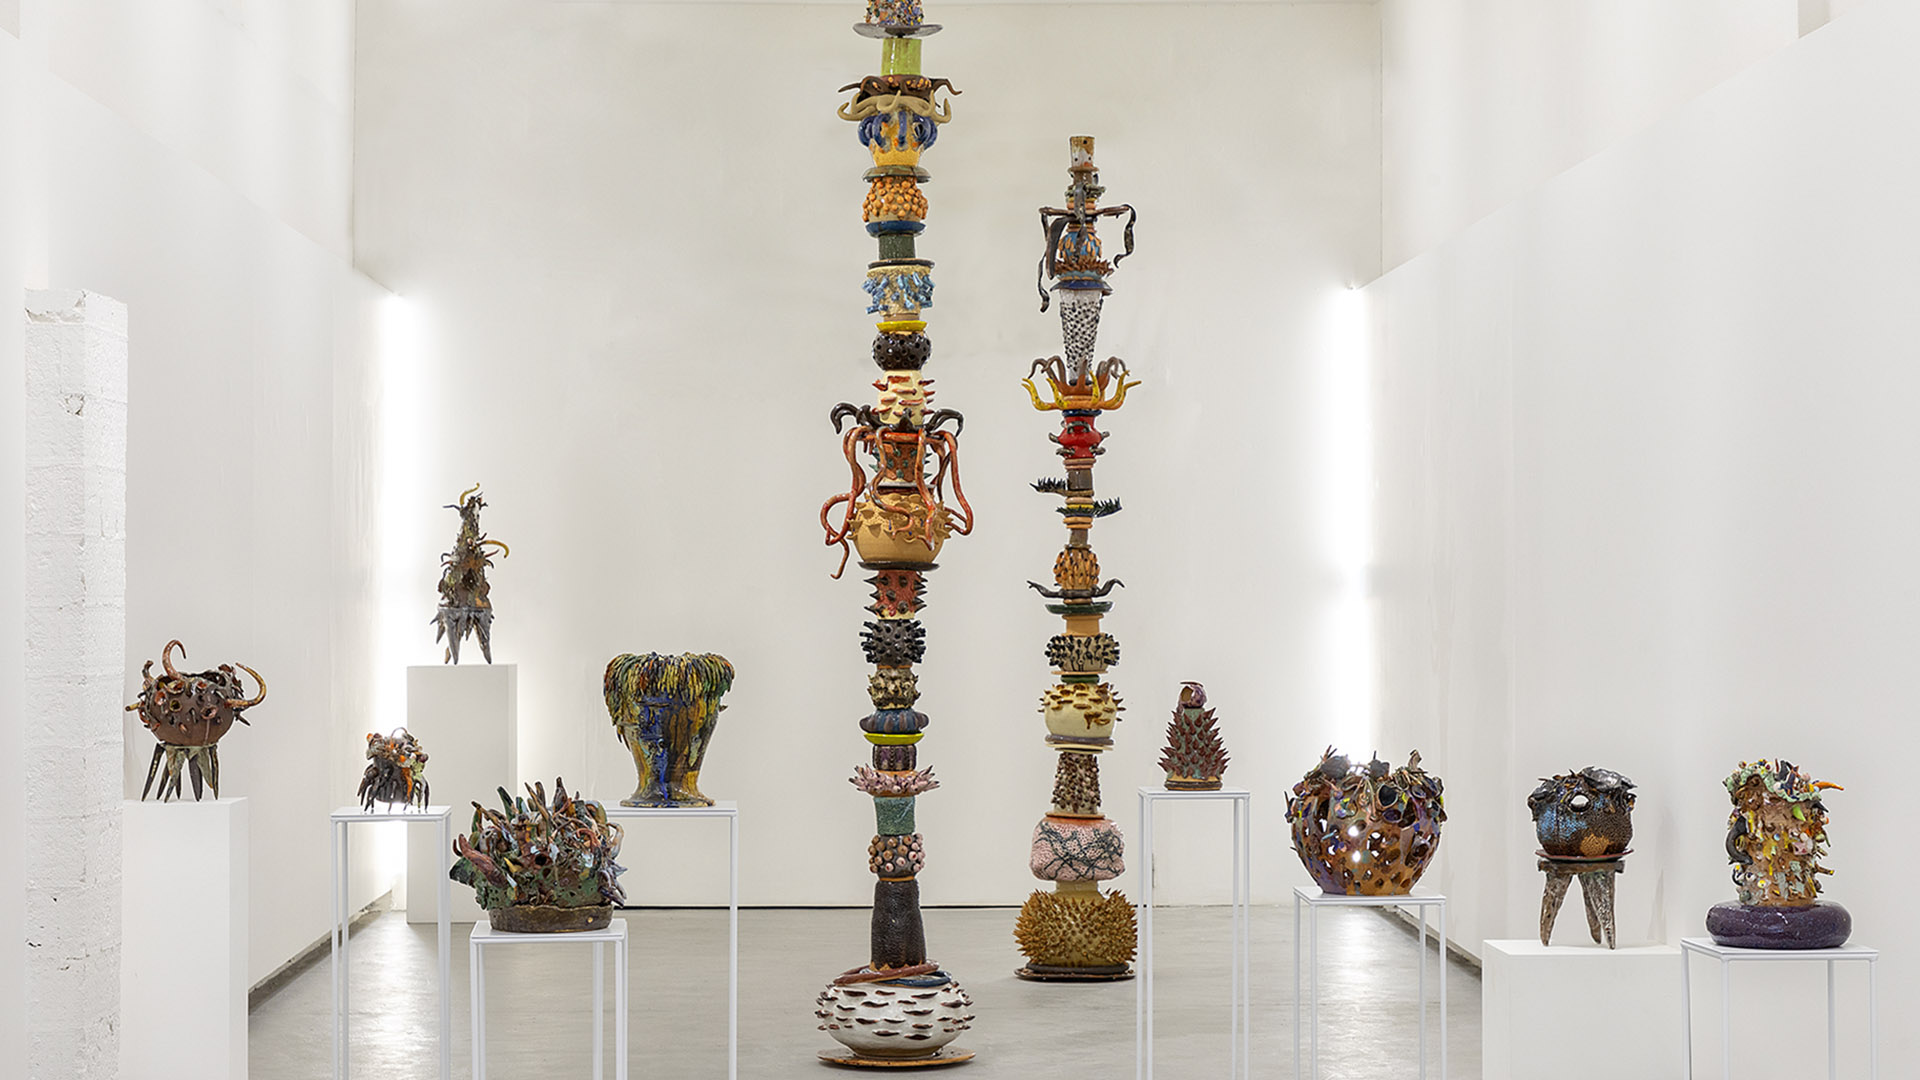 Individual de Paula Juchem traz novos caminhos para a escultura por meio da cerâmica